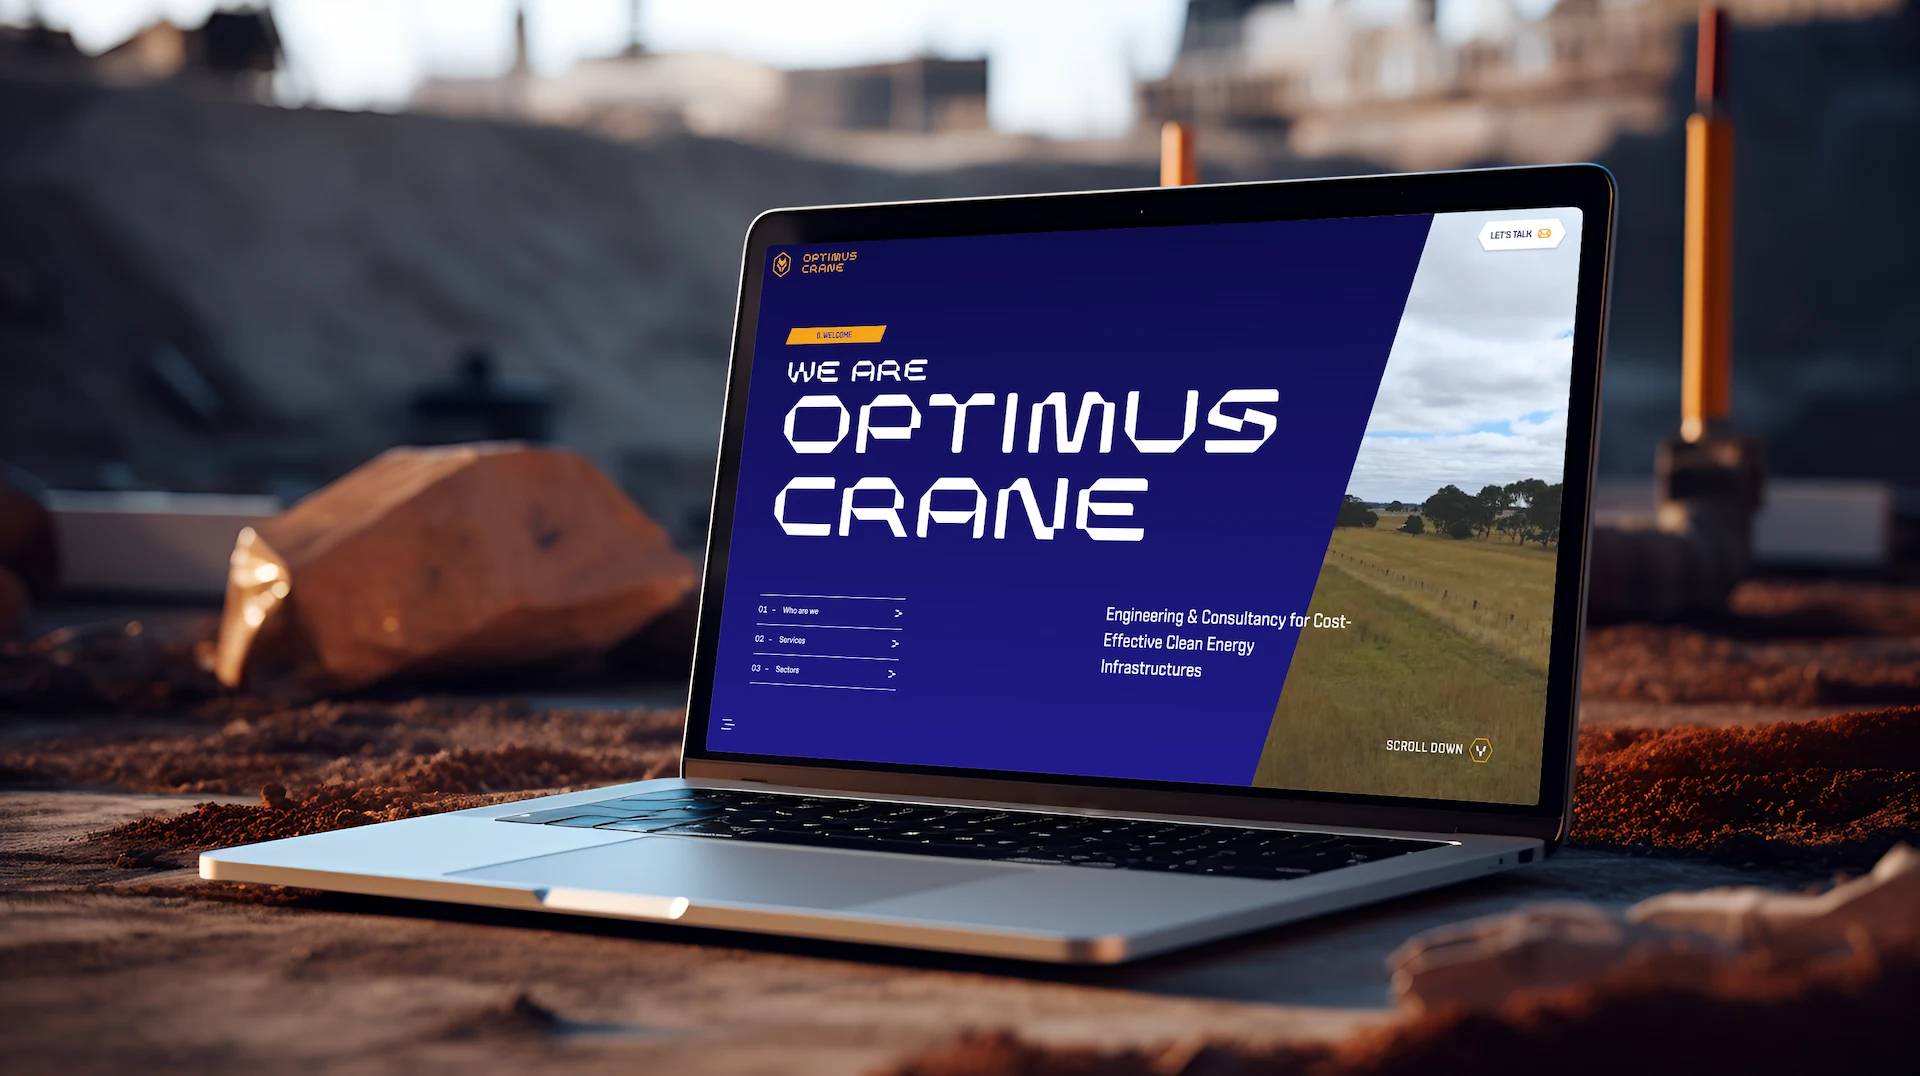 Imagen de portátil sobre una mesa con imagen de inicio de web de Optimus Crane en pantalla